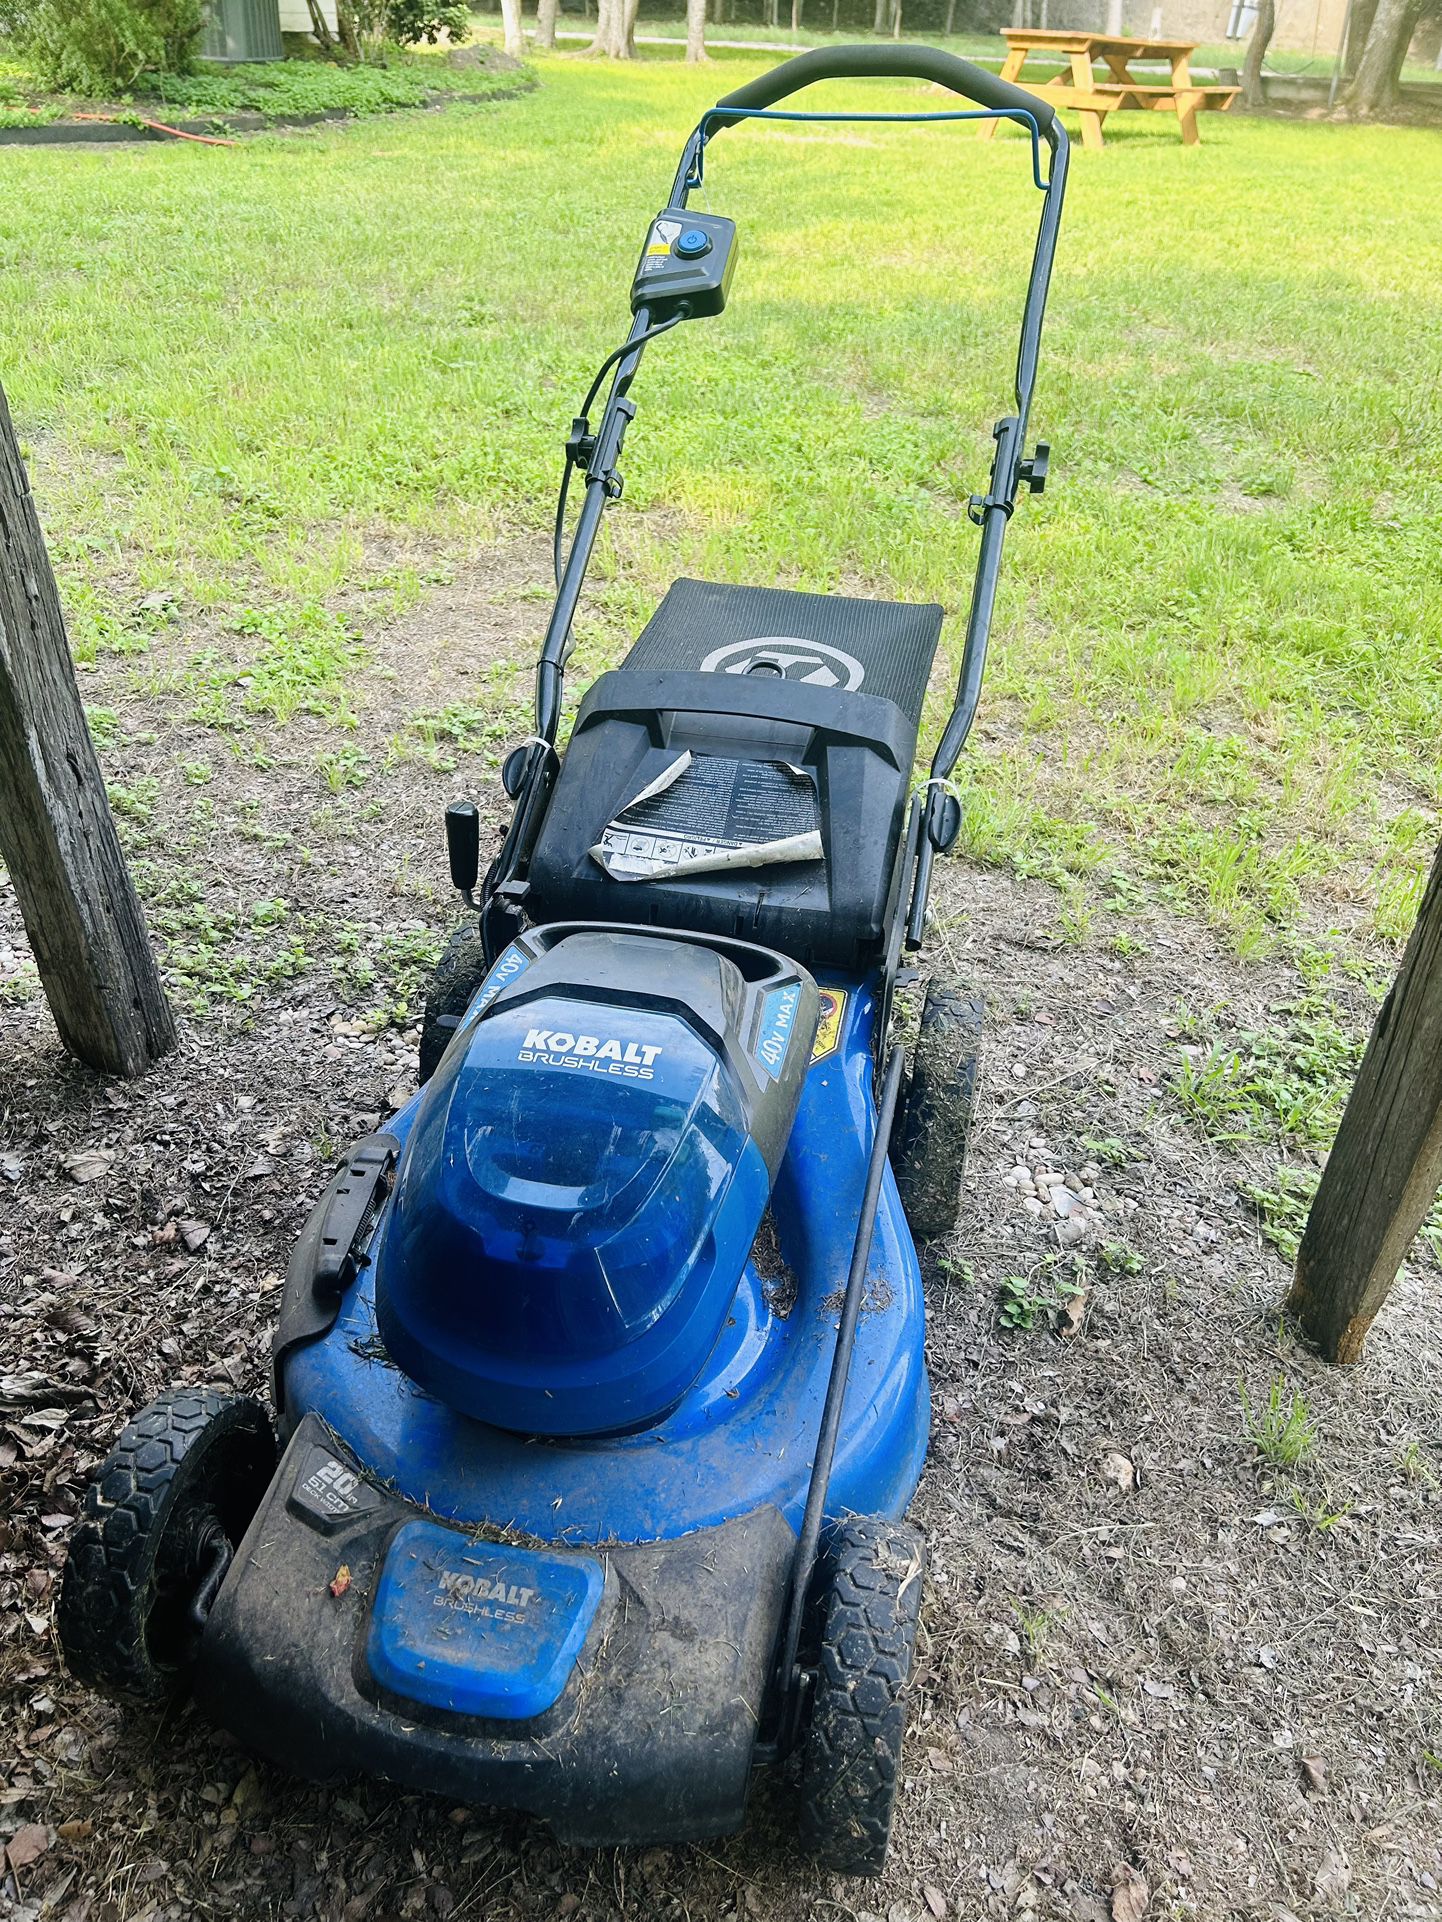 Kobalt cordless Push Lawn Mower